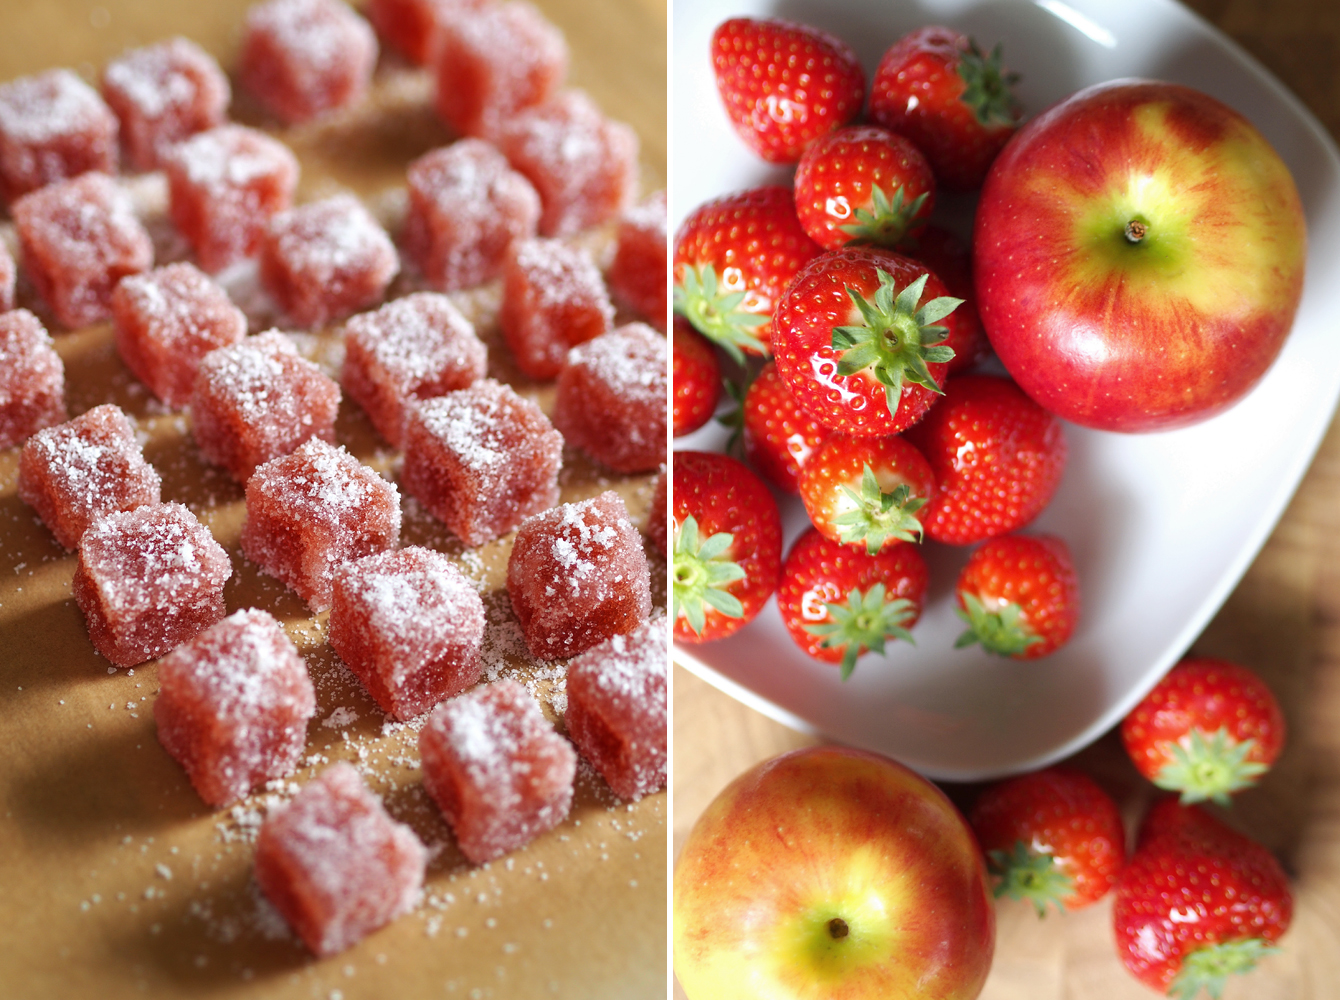 Vefane Erdbeer-Apfel-Geleewürfel - "Fee ist mein Name" // Vegan strawberry apple gum drops